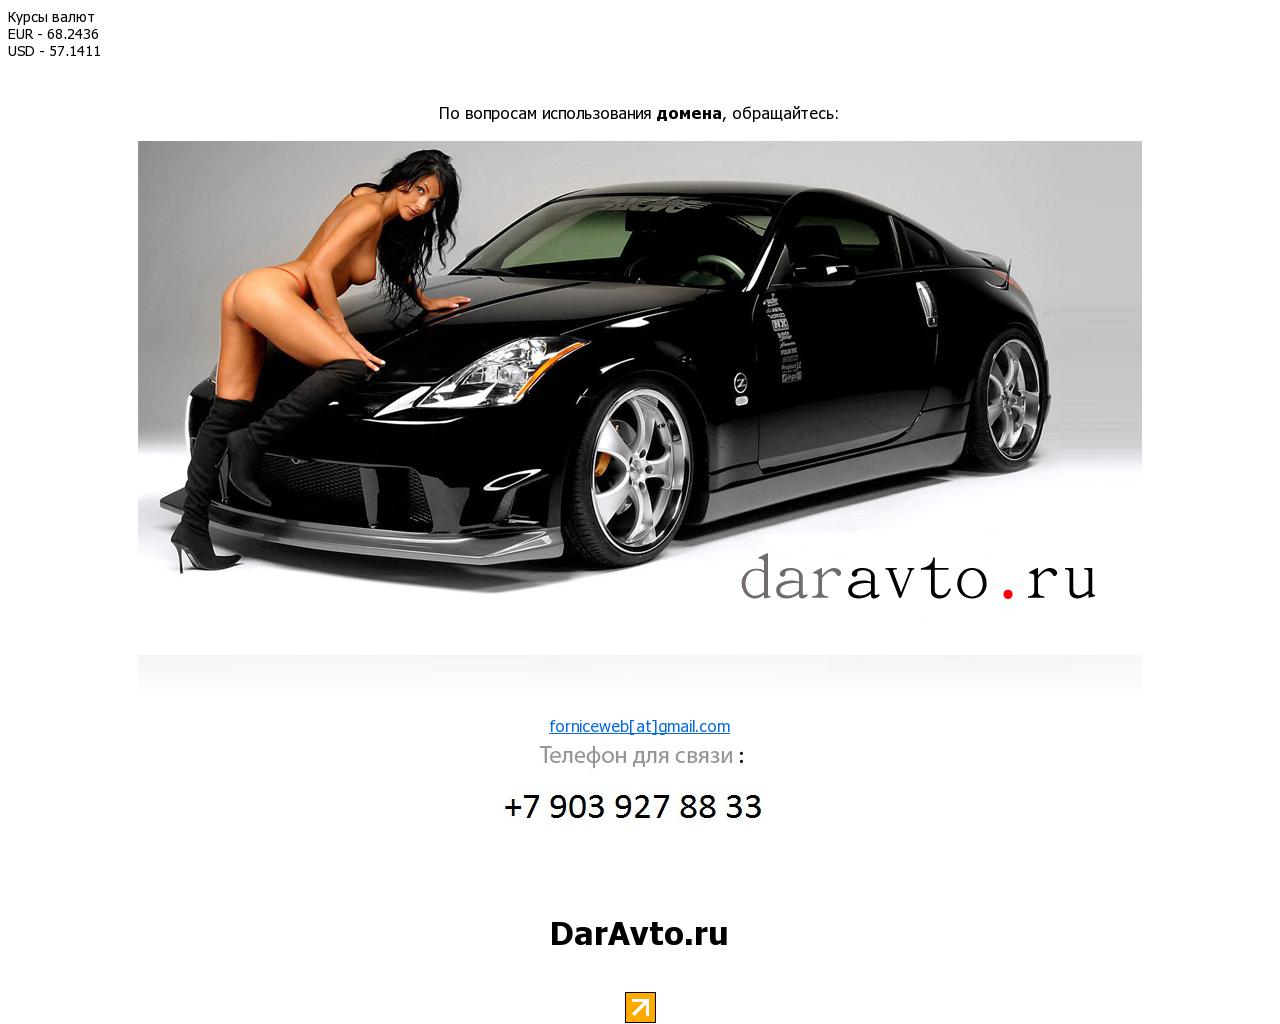 Изображение сайта daravto.ru в разрешении 1280x1024